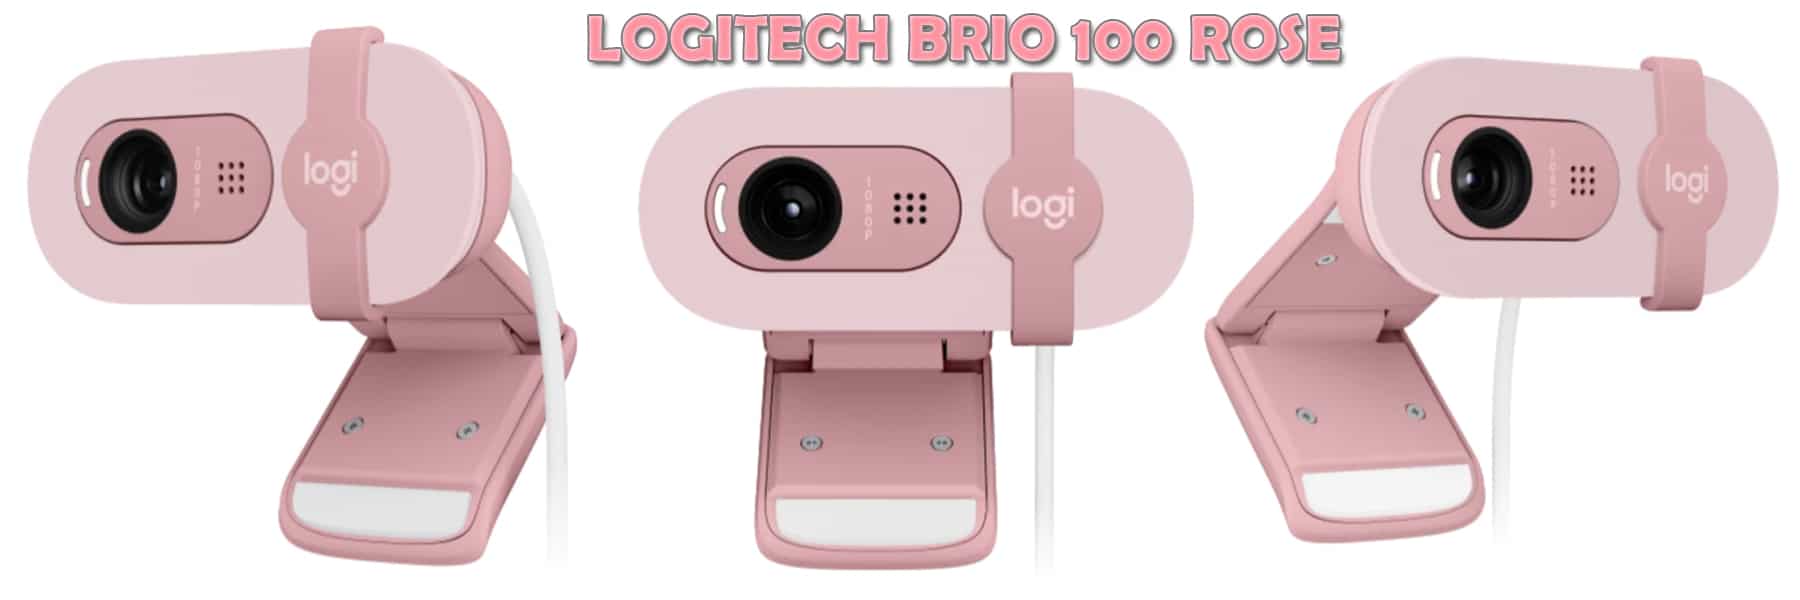 webcam logitech brio 100 màu hồng là gì